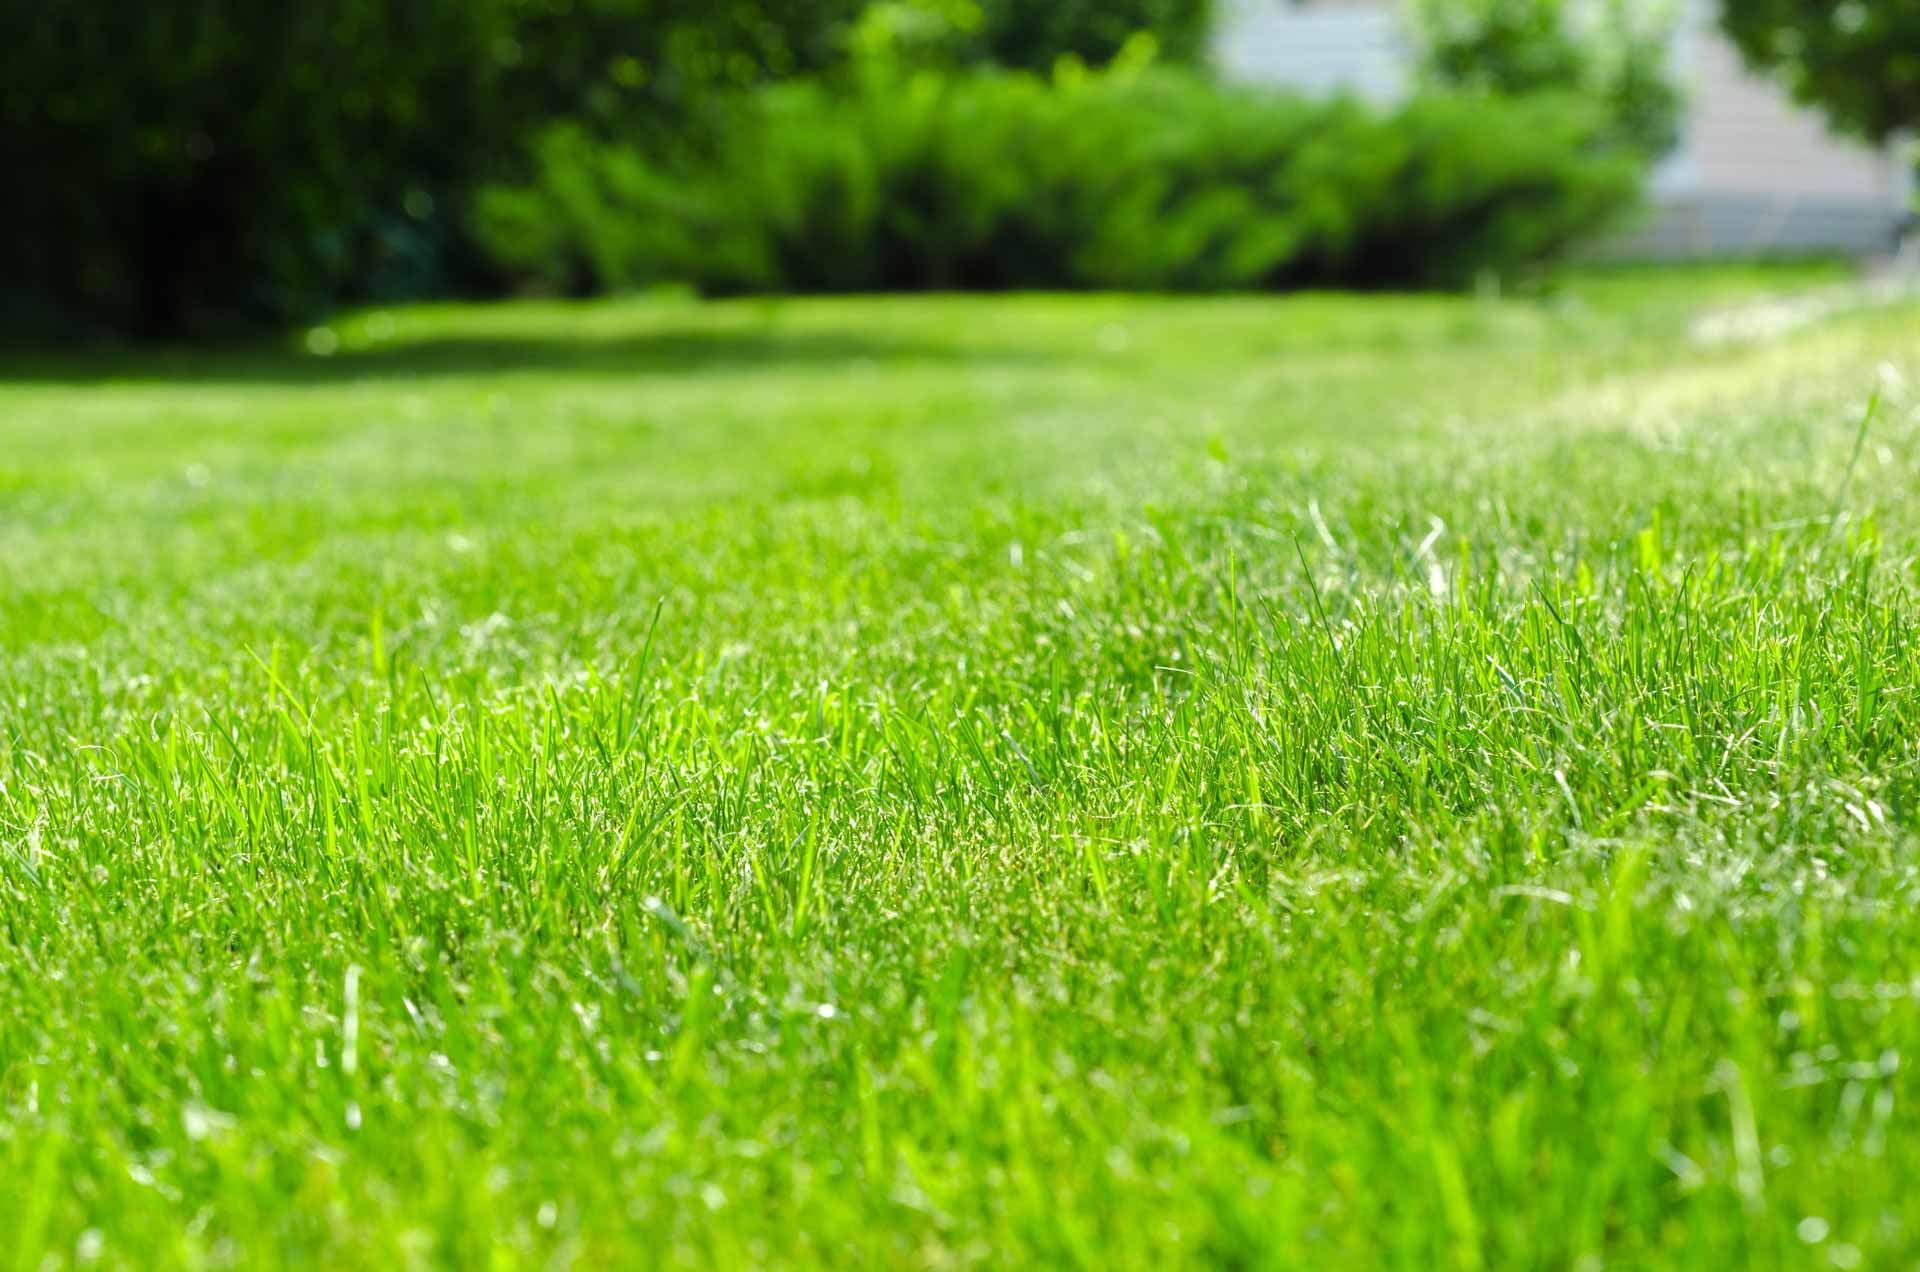 Pest-free lawn